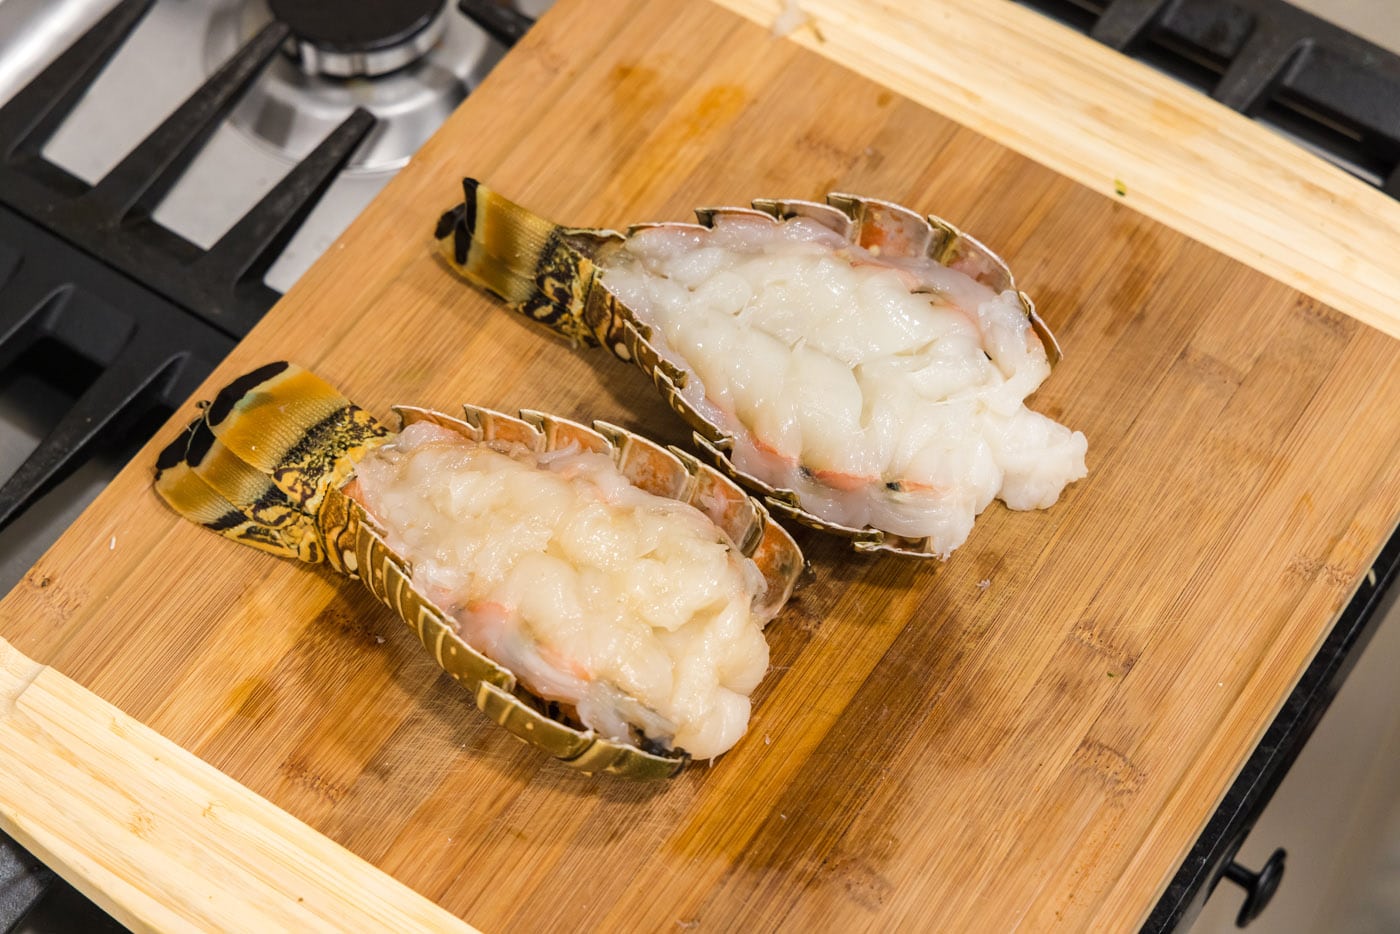 butterflied lobster tail on a cutting board